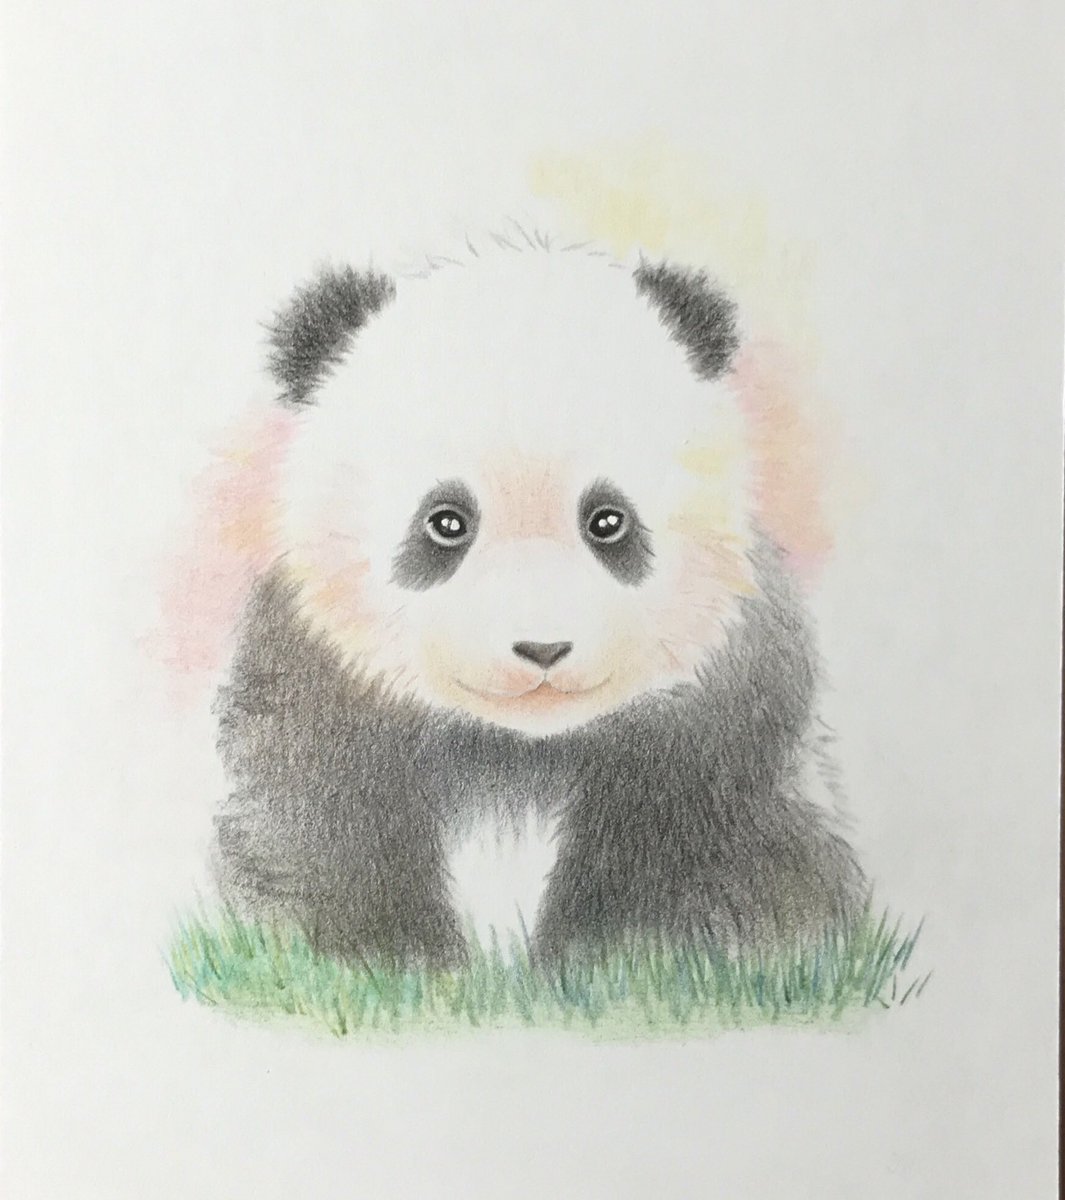 Twitter 上的 咲 パンダさん描きます ベビーゆいひん ピンクは いっぱい舐めてお世話してくれたママの愛情の色 黄色は 元気いっぱいなゆいちゃんの希望の色 結浜 Yuihin Giantpanda Panda 大熊猫 Panda パンダ 動物画 イラスト 色鉛筆画